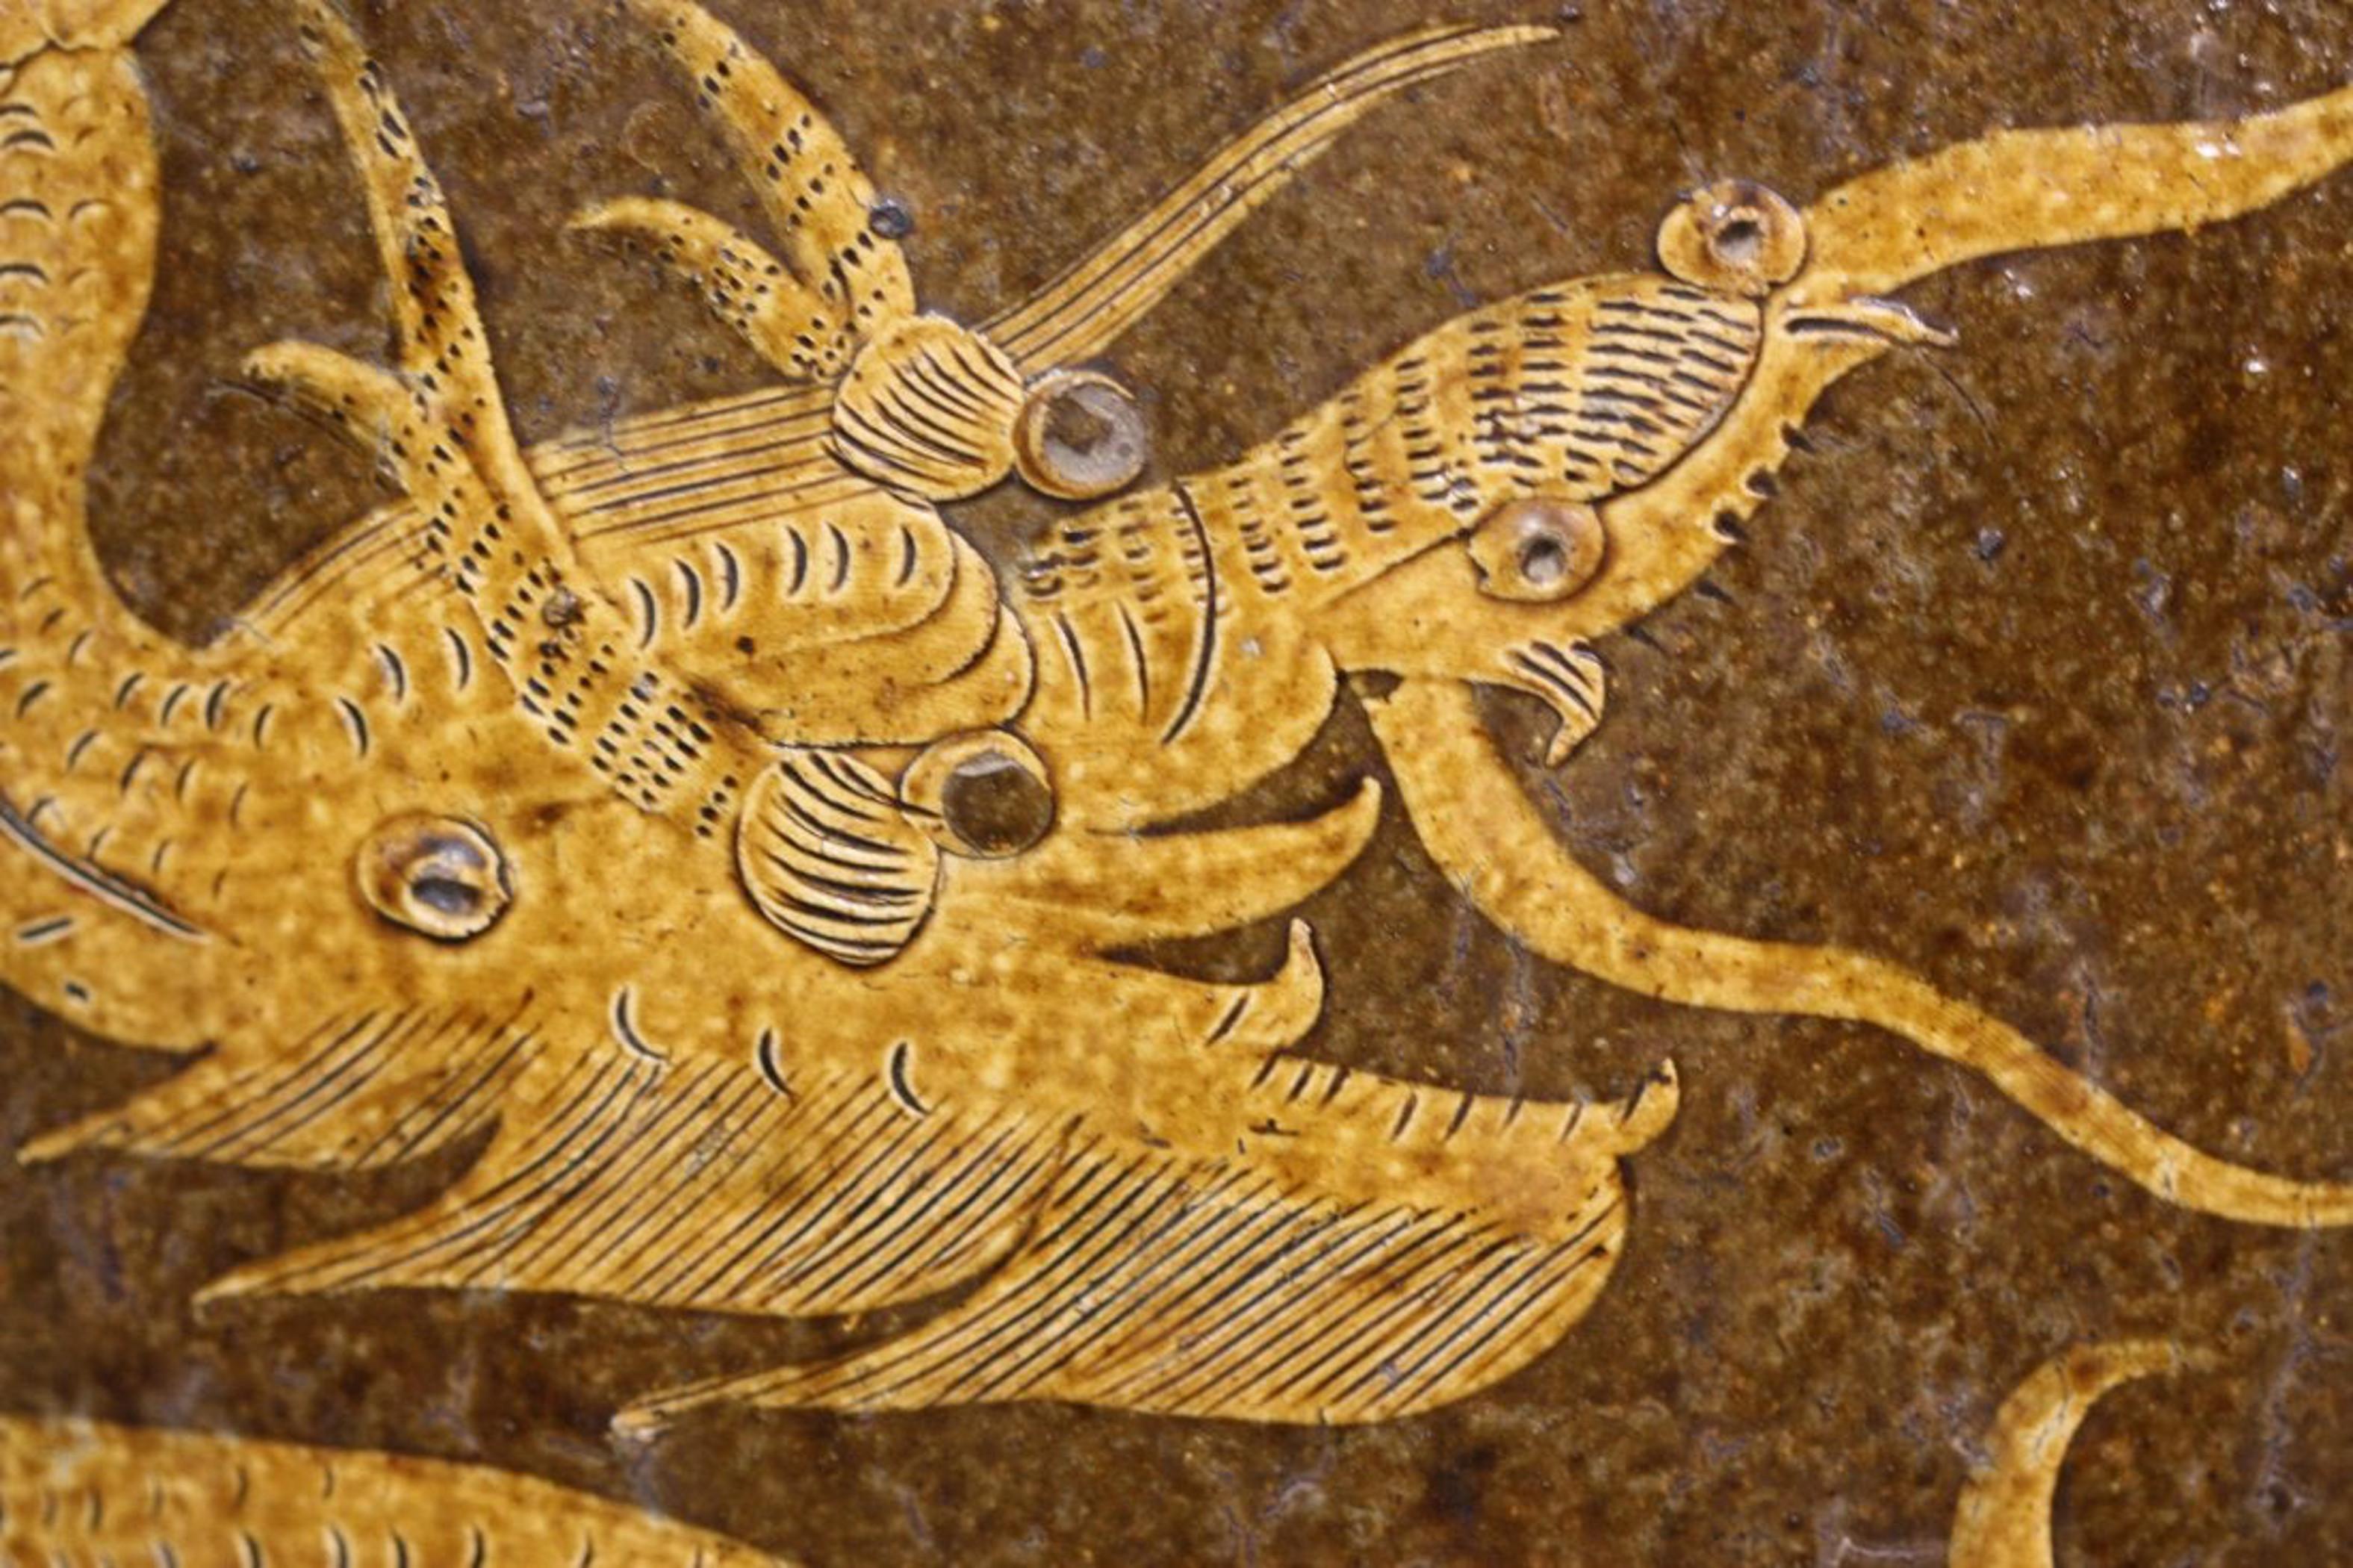 Massiver antiker chinesischer Steingut-Drachenkrug aus Martaban
aus brauner und senfgelber Glasur, die ein himmlisches Drachenpaar auf der Jagd nach der flammenden Perle der Weisheit darstellt. Diese großen Keramikgefäße wurden zur Aufbewahrung